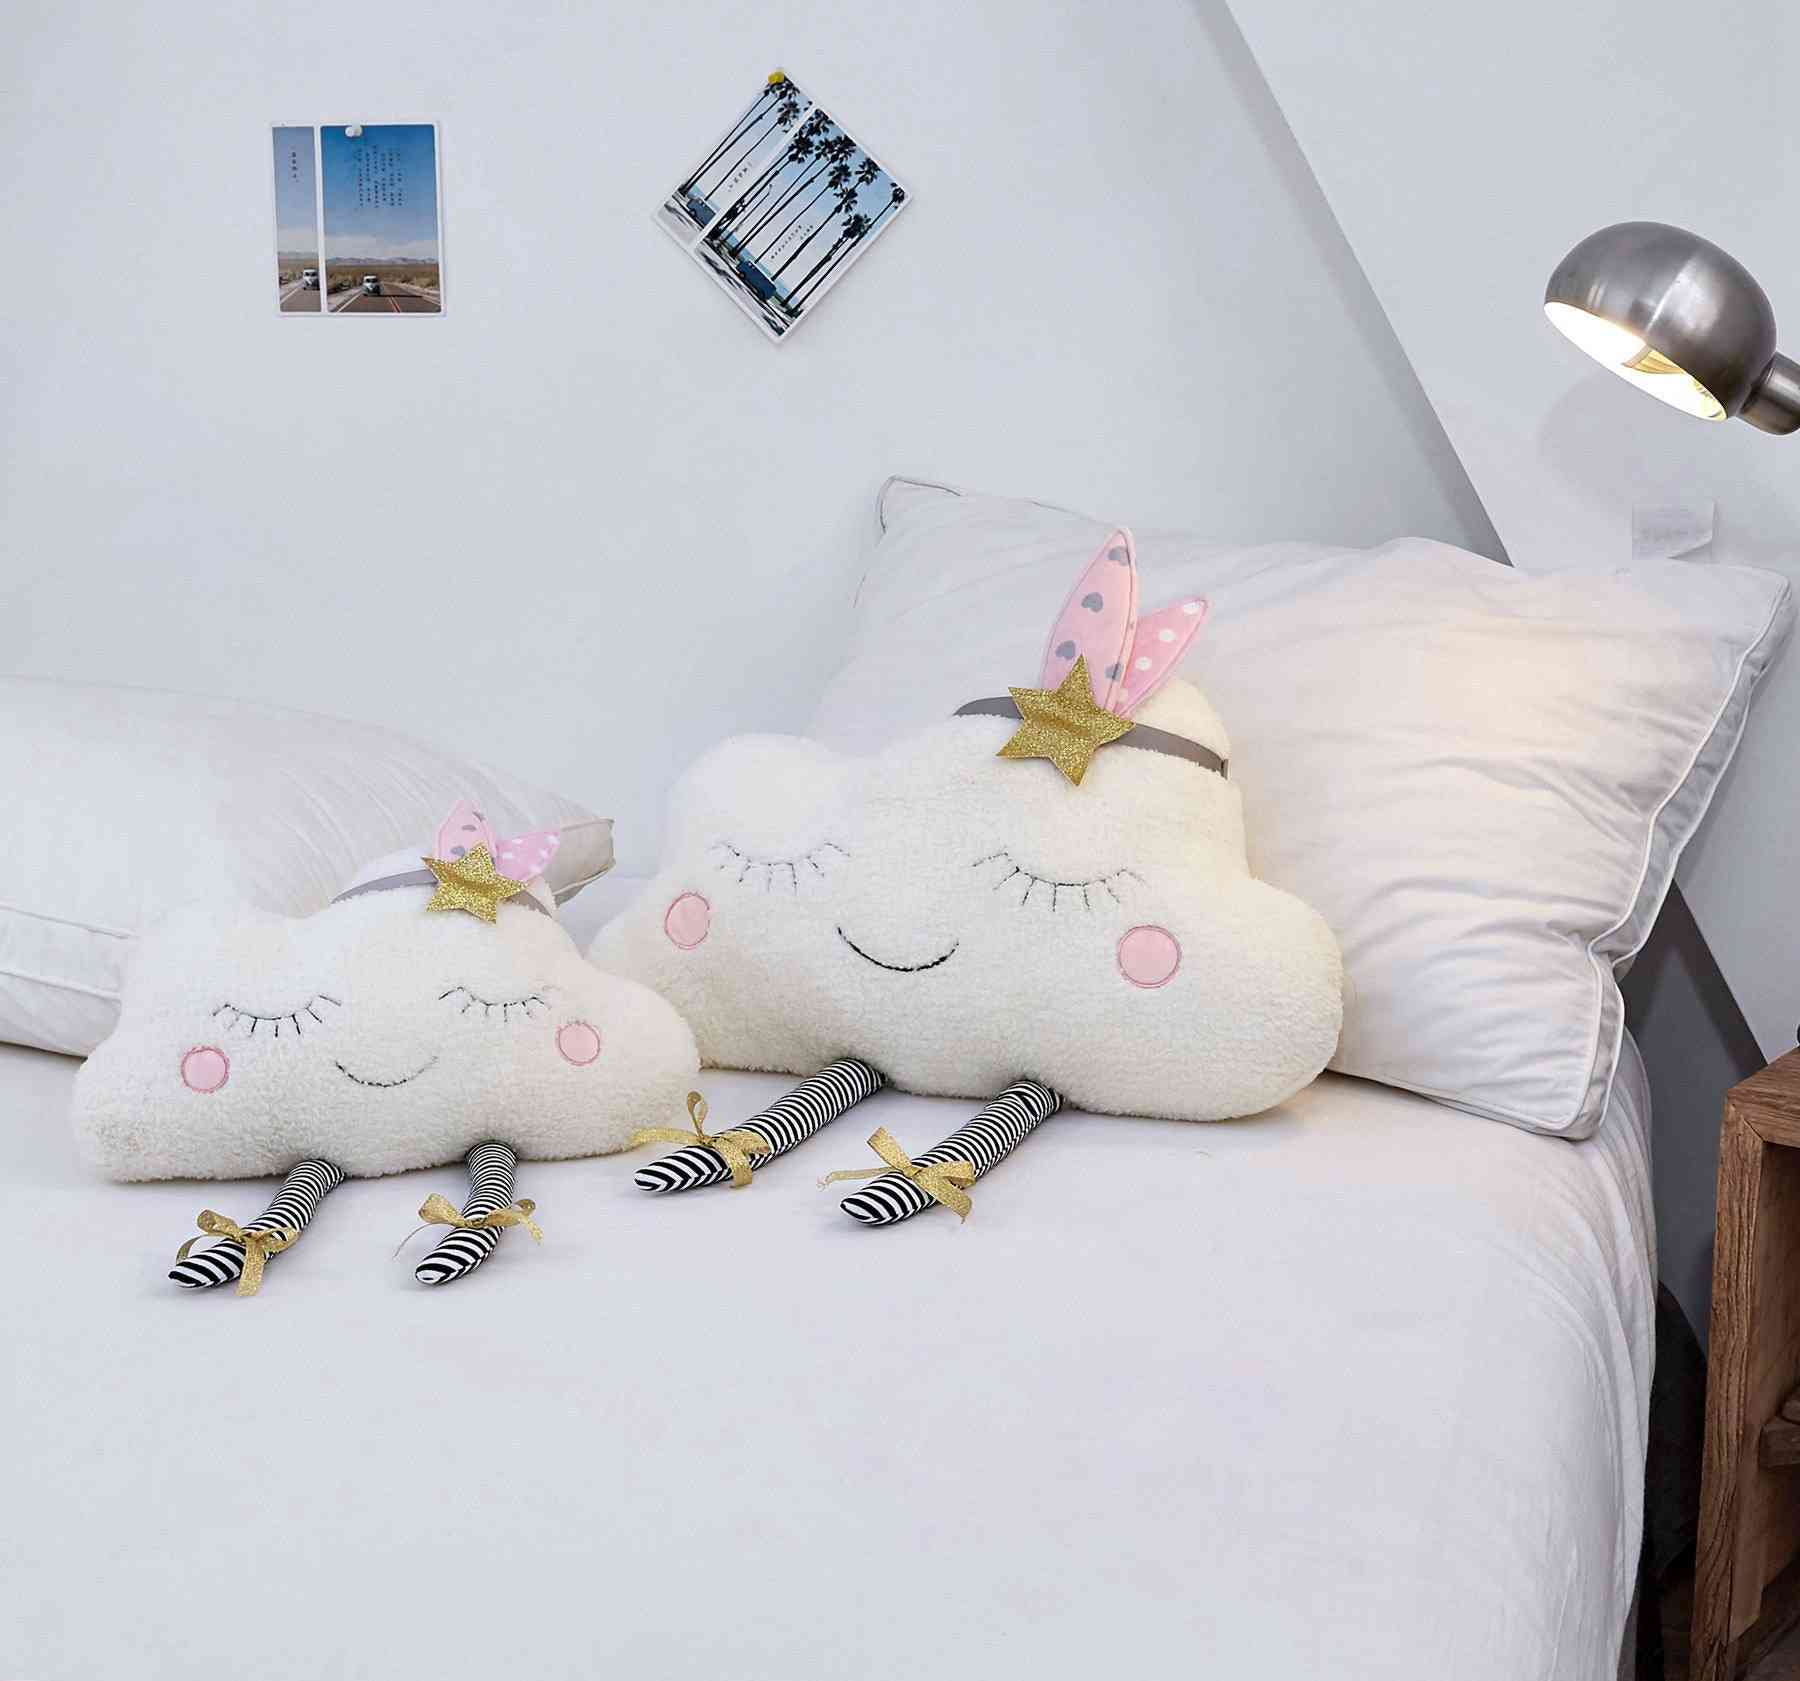 Decorazione della casa ins nuvola peluche cuscino morbido cuscino kawaii nuvola peluche ripiene giocattoli per bambini bambino bambini cuscino ragazza regalo - 25 cm